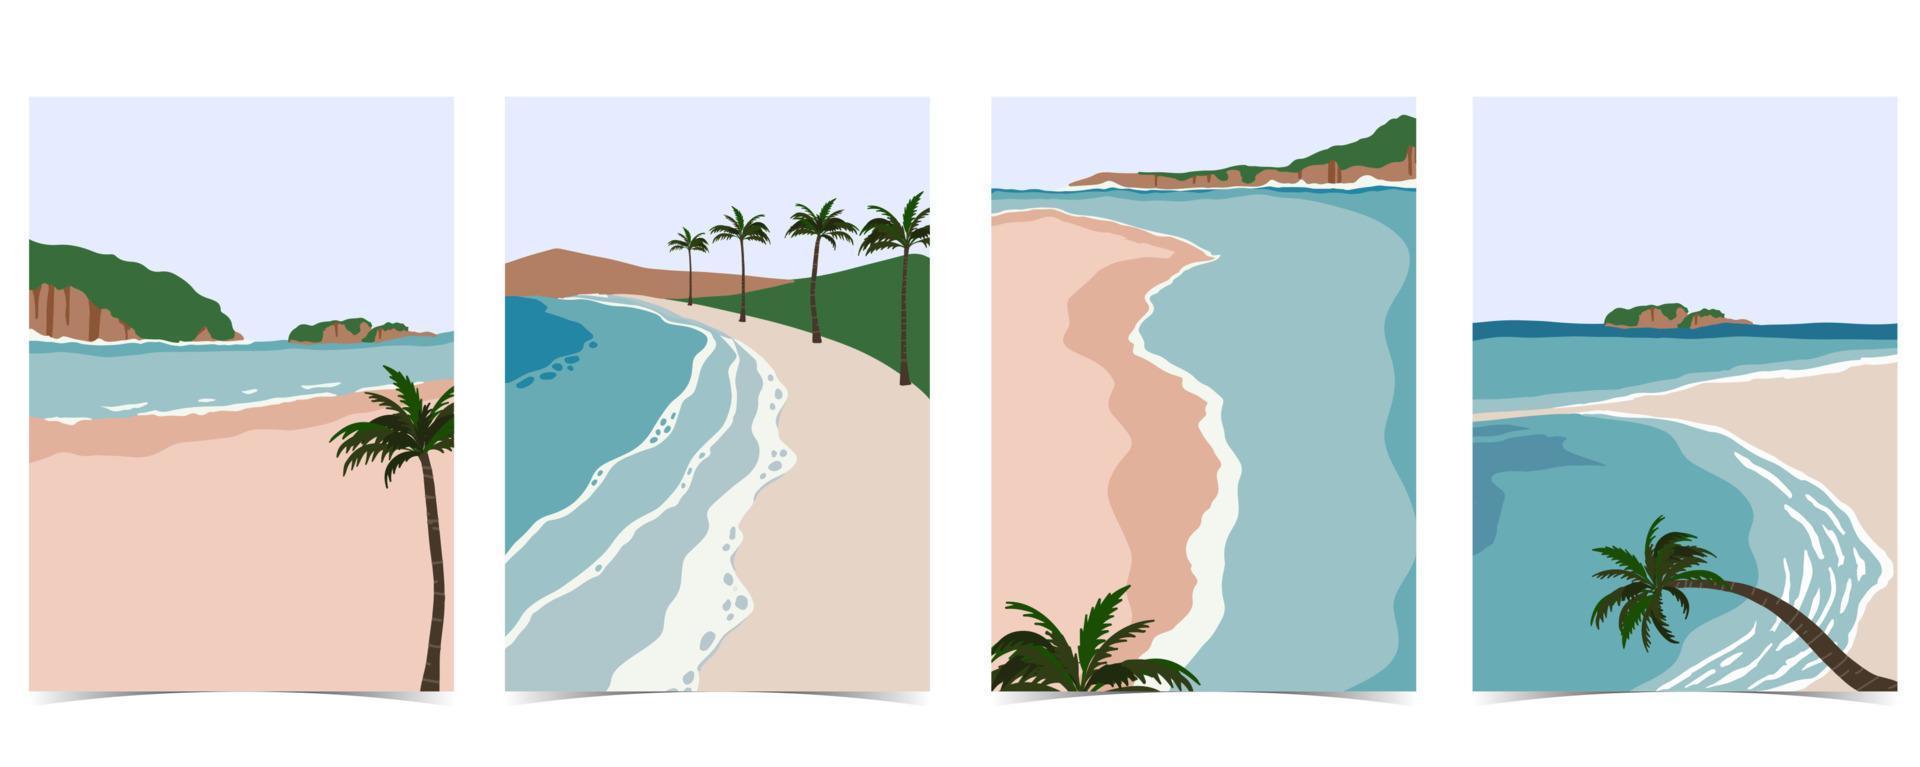 carte postale de plage avec soleil, mer, ciel et montagne pendant la journée vecteur